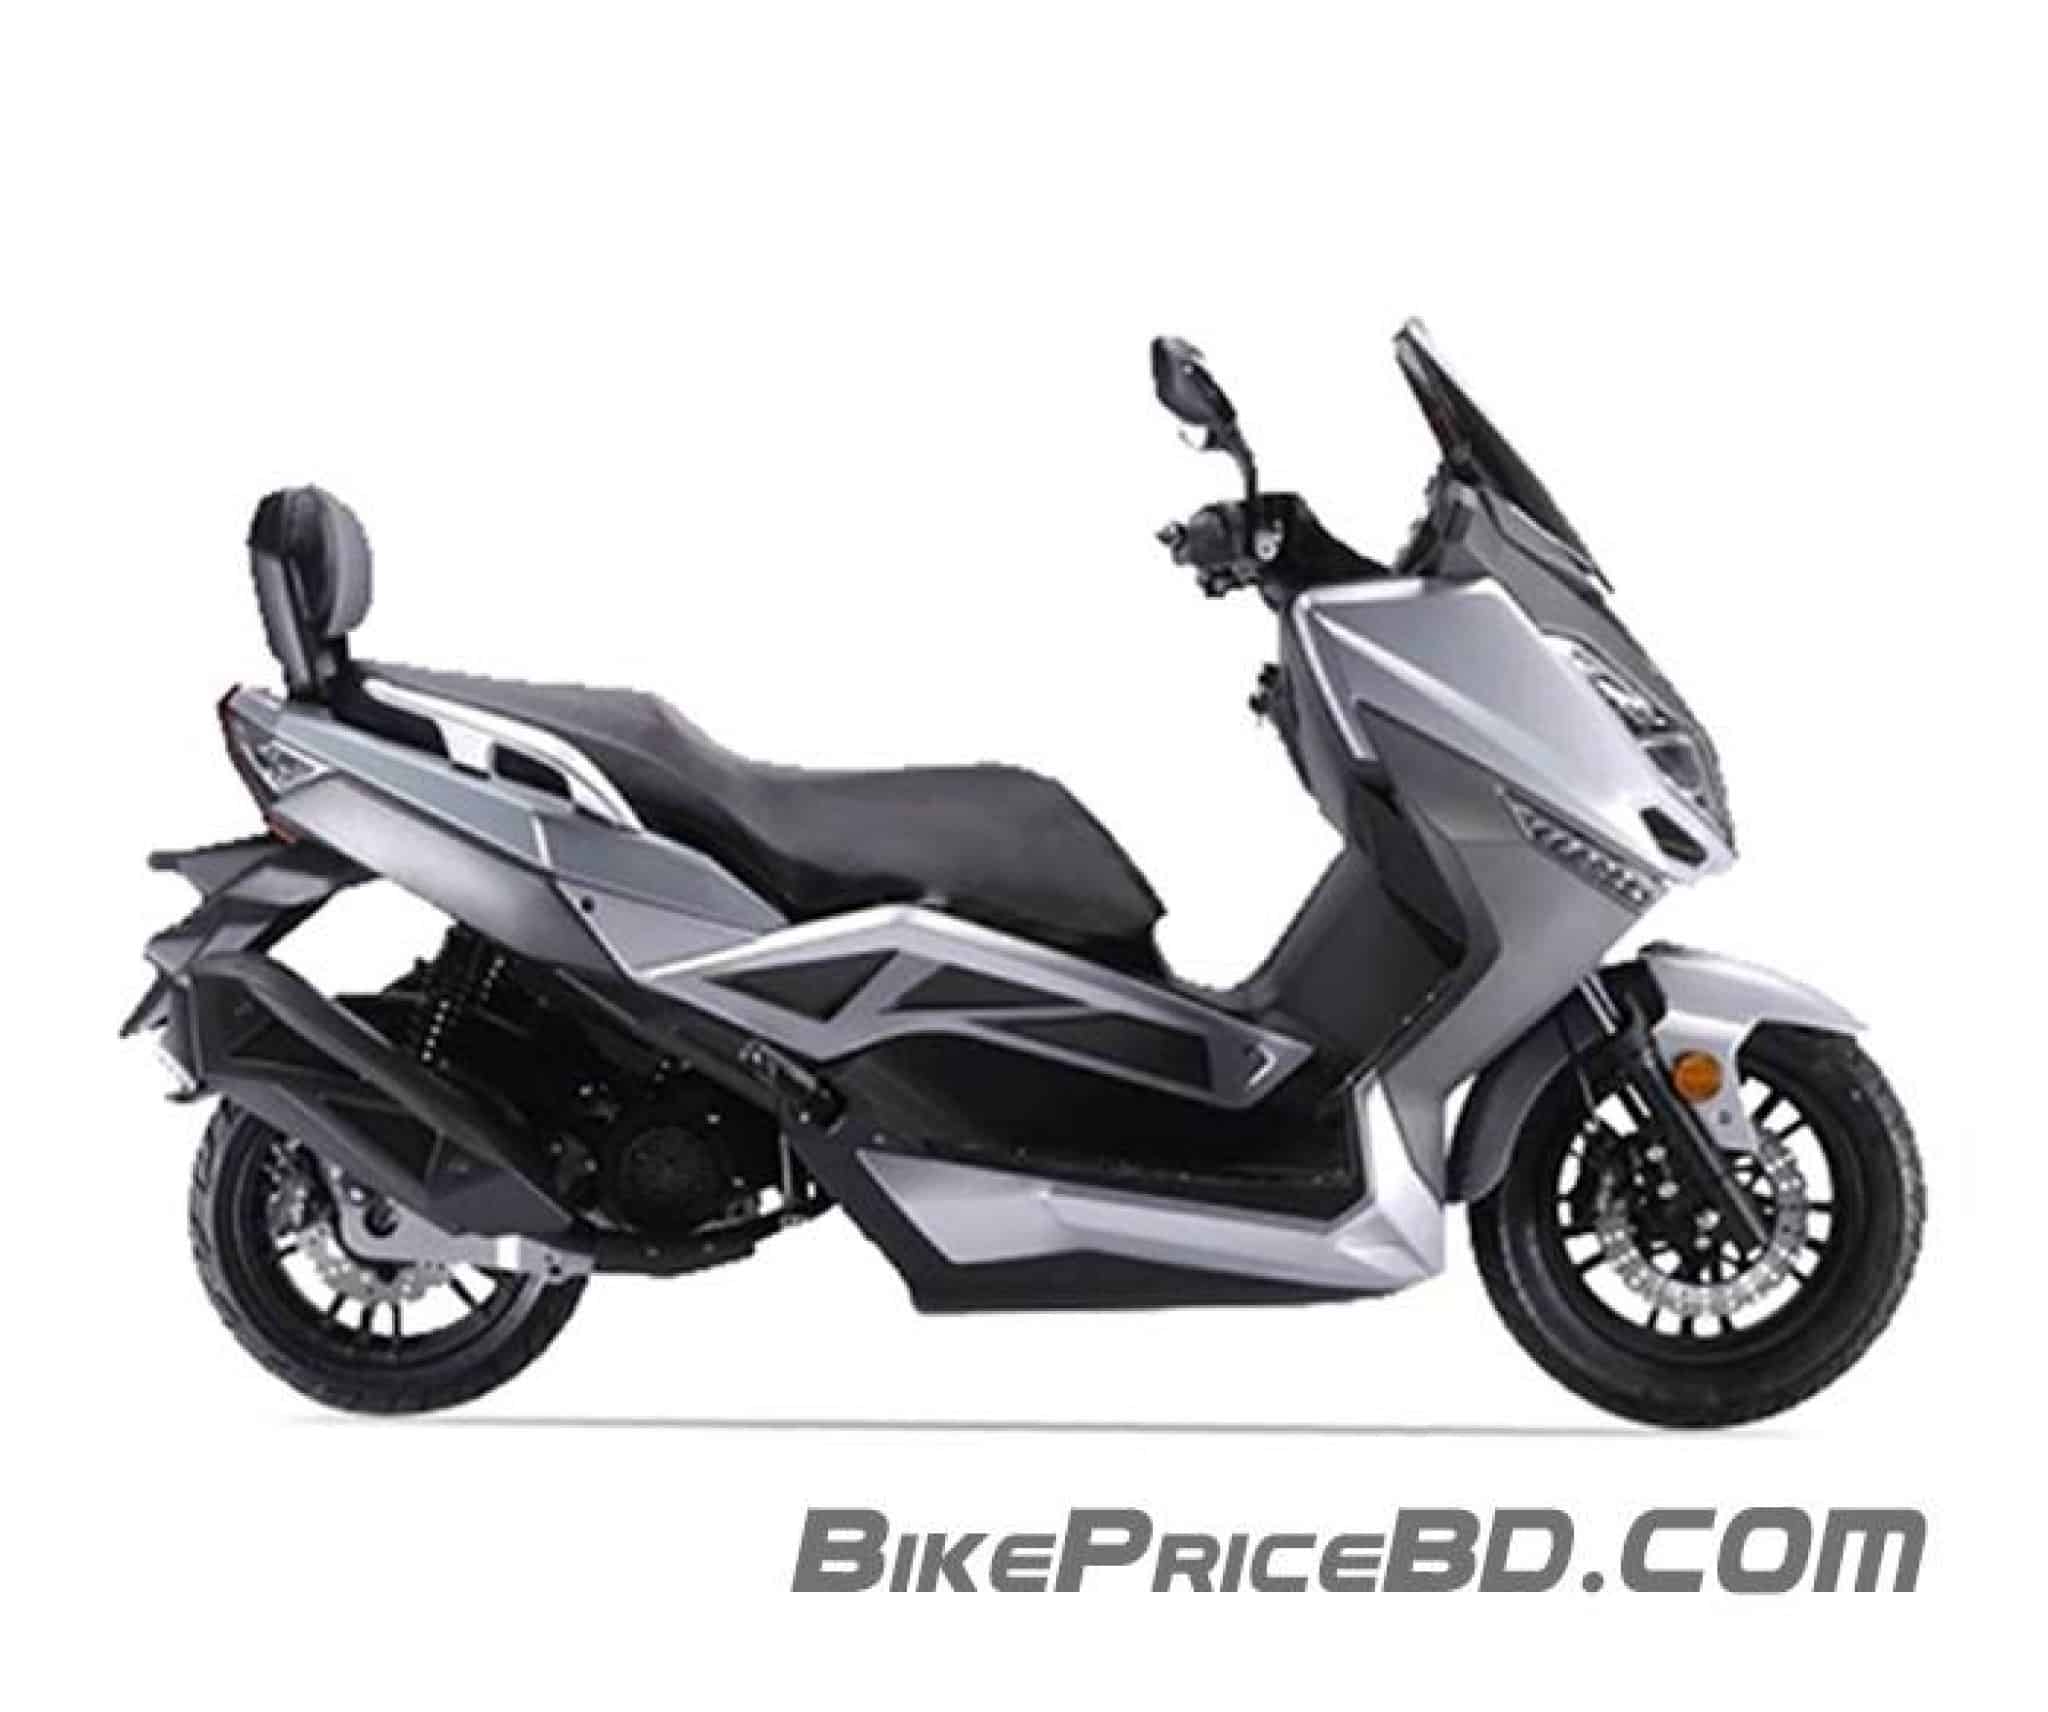 Suzuki GSX 125 Price in BD 2021 | চলতি মূল্য | BikePriceBD